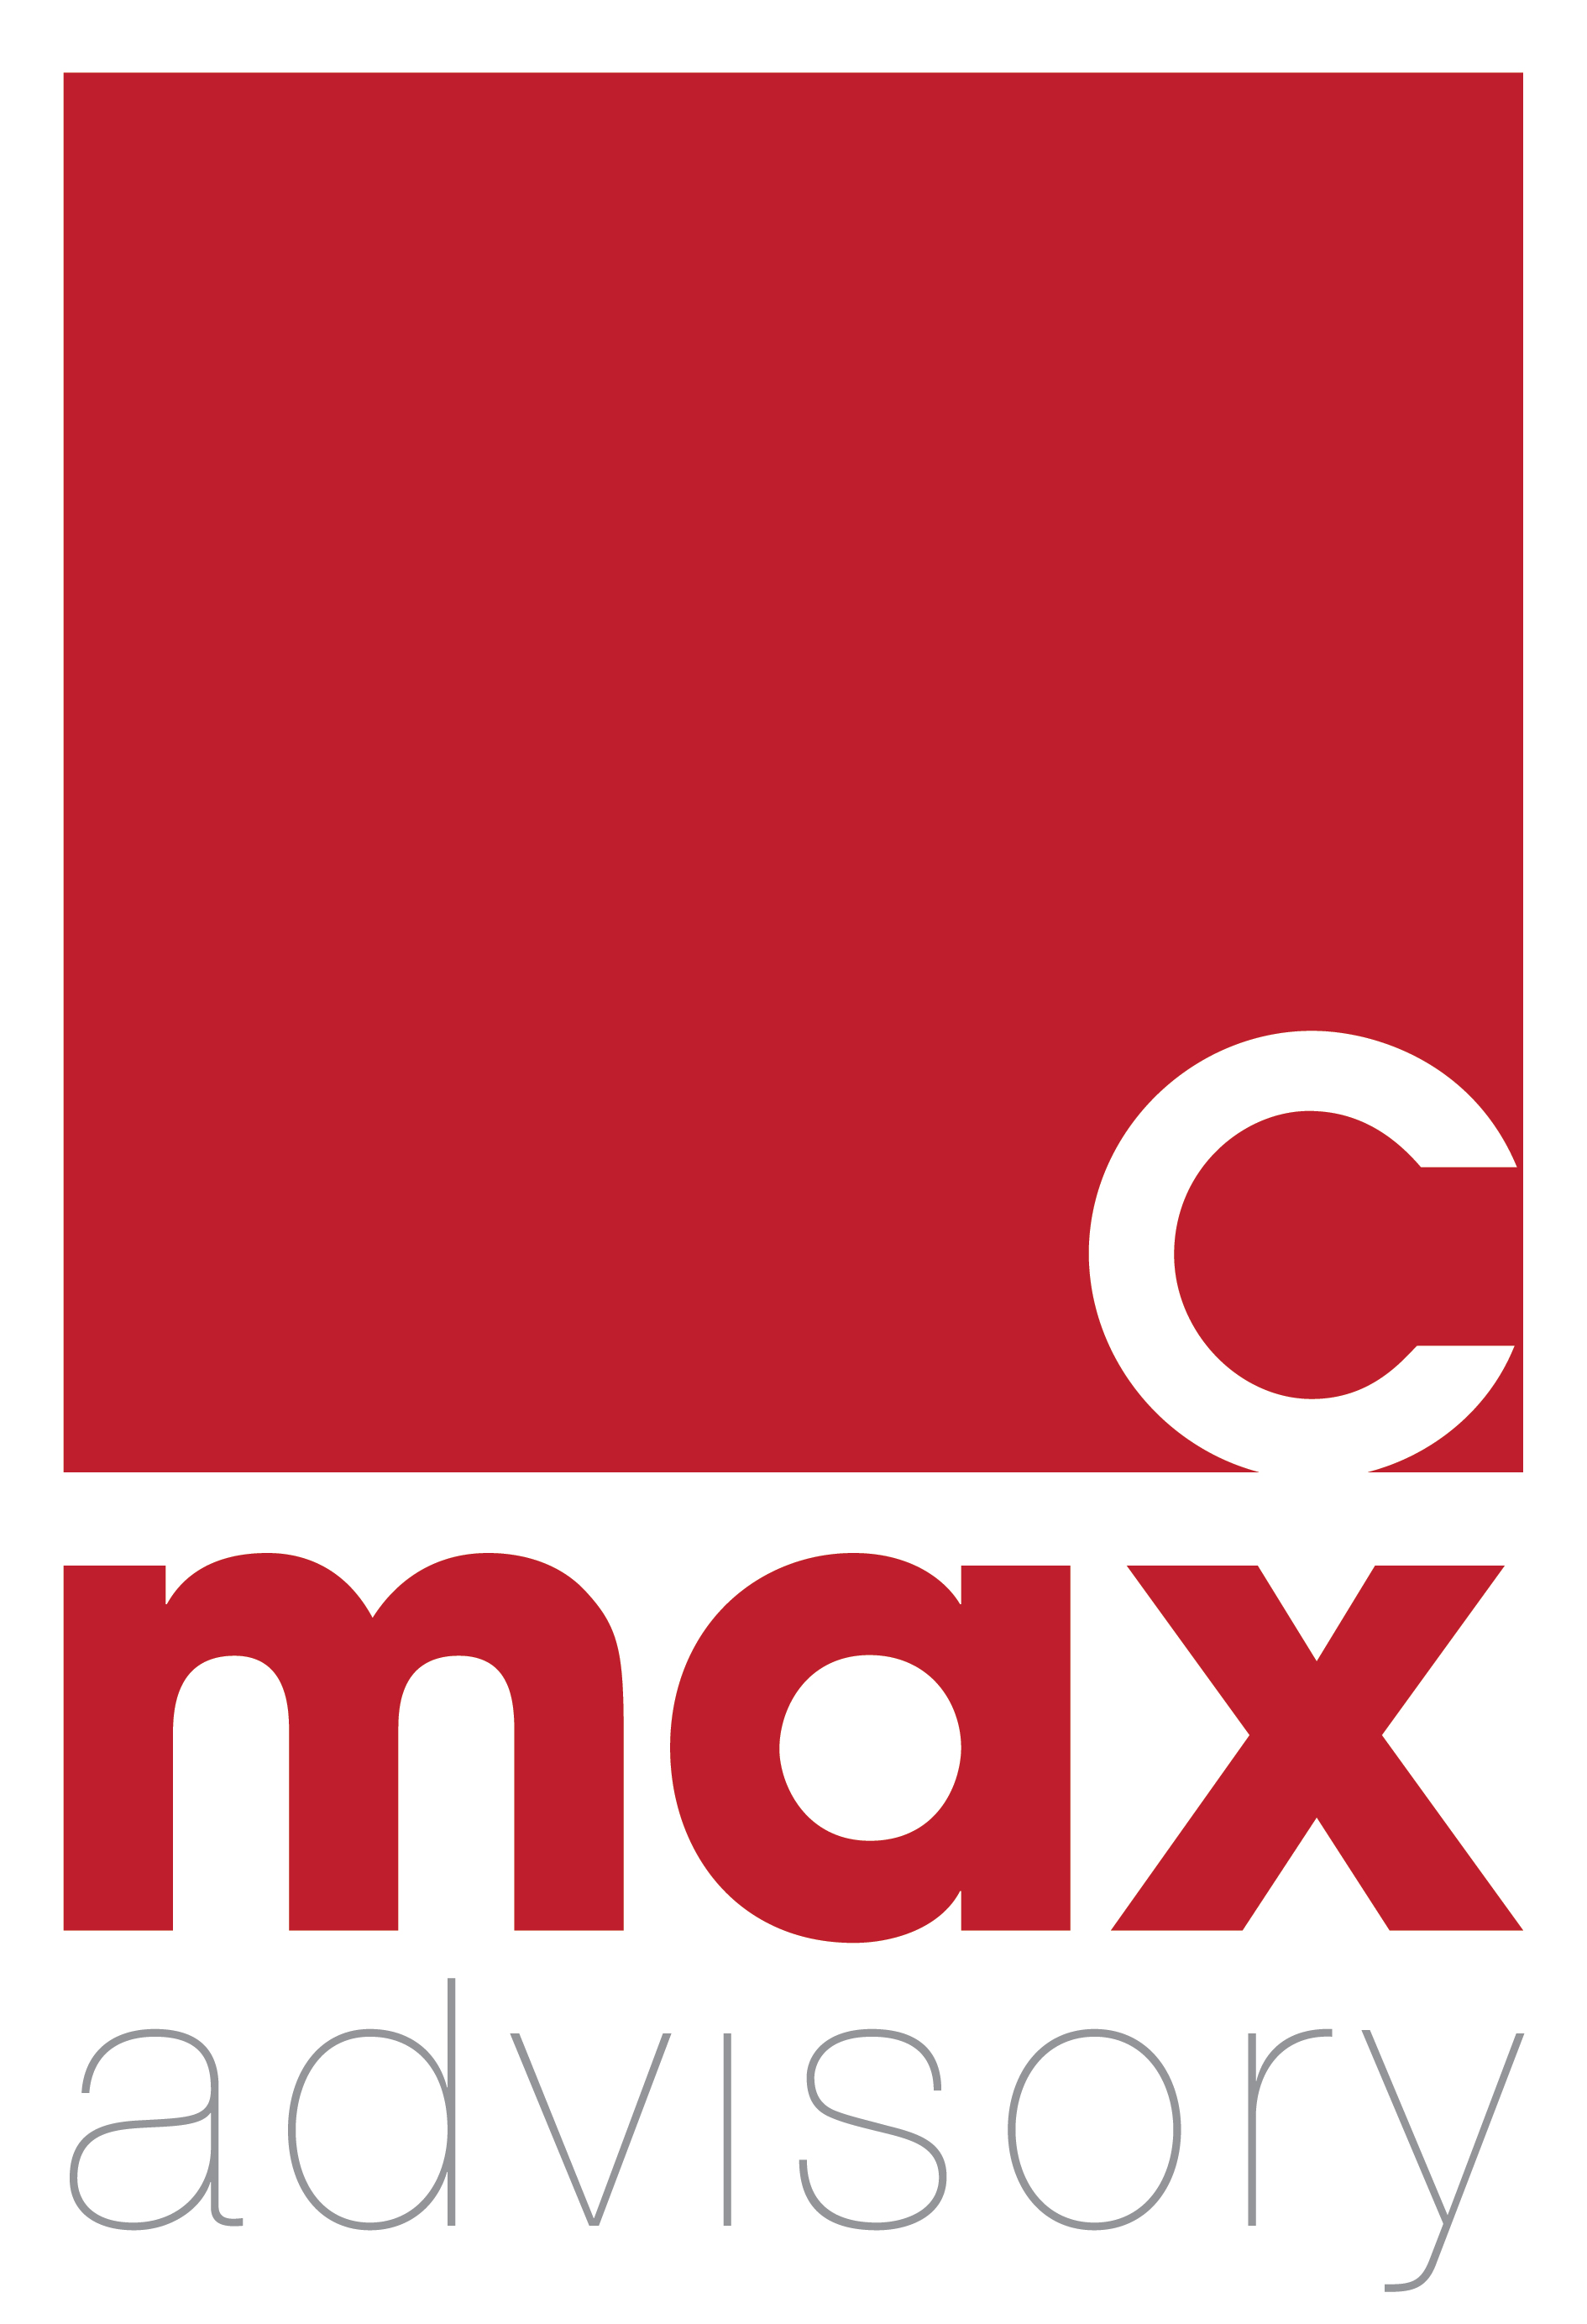 CMAX Advisory logo